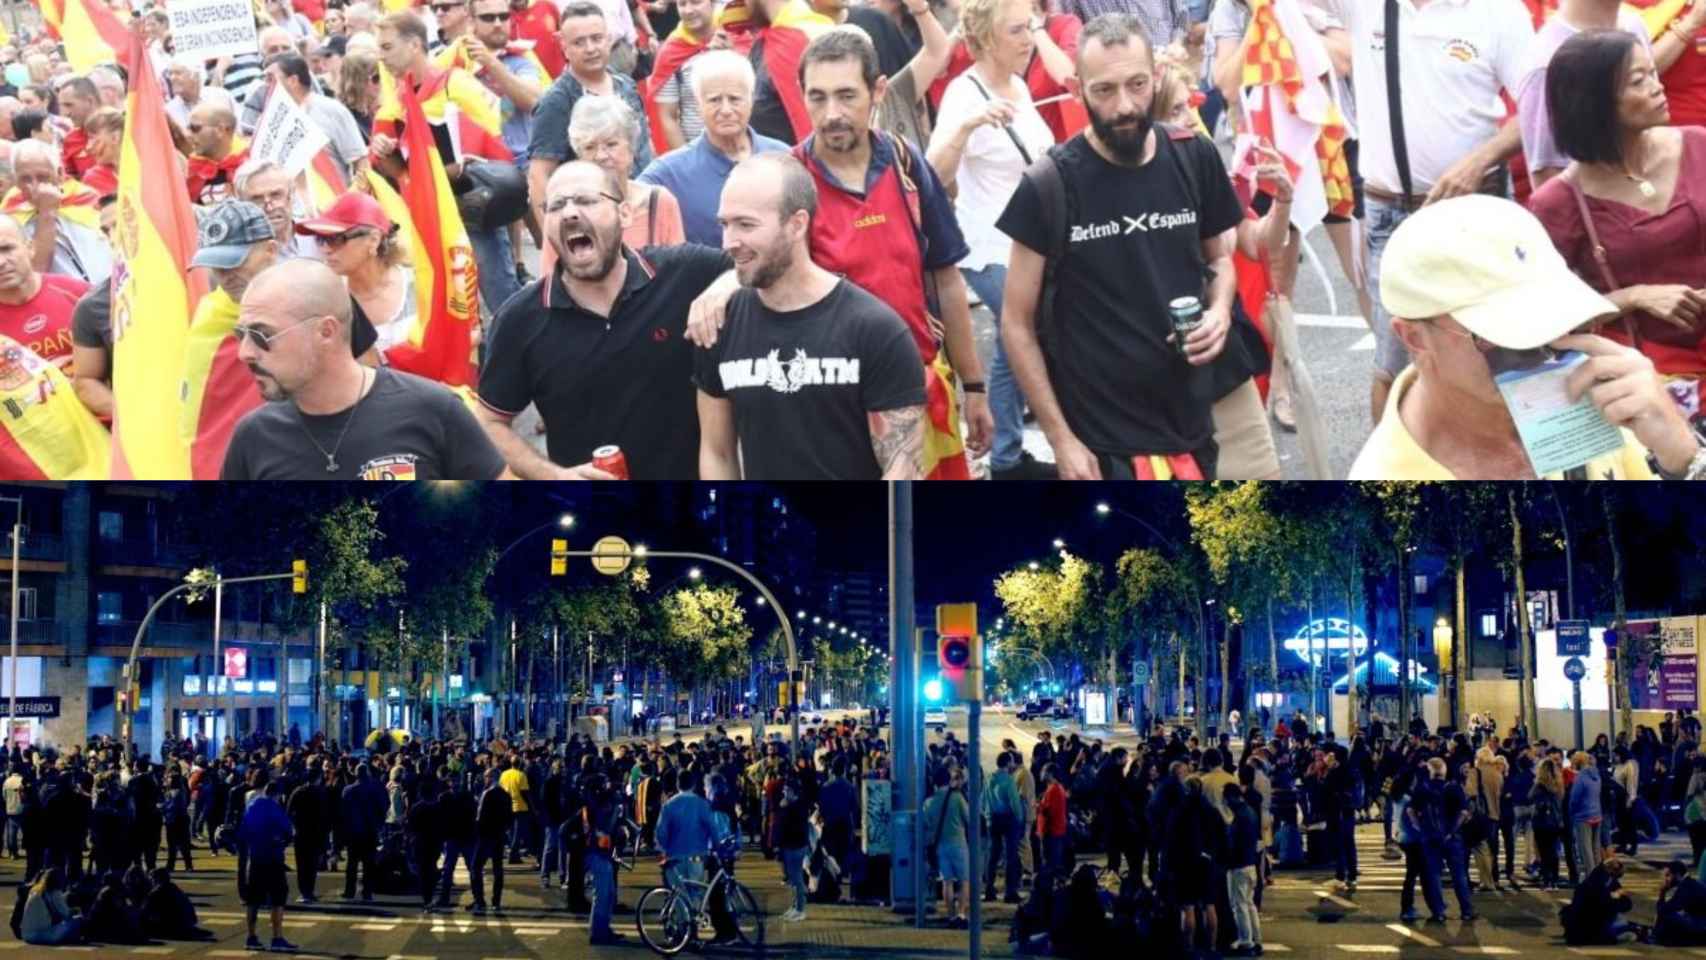 Fotomontaje de dos concentraciones de signo contrario: en la parte superior de la imagen colectivos ultras favorables a la unión de España y en la inferior un corte de los